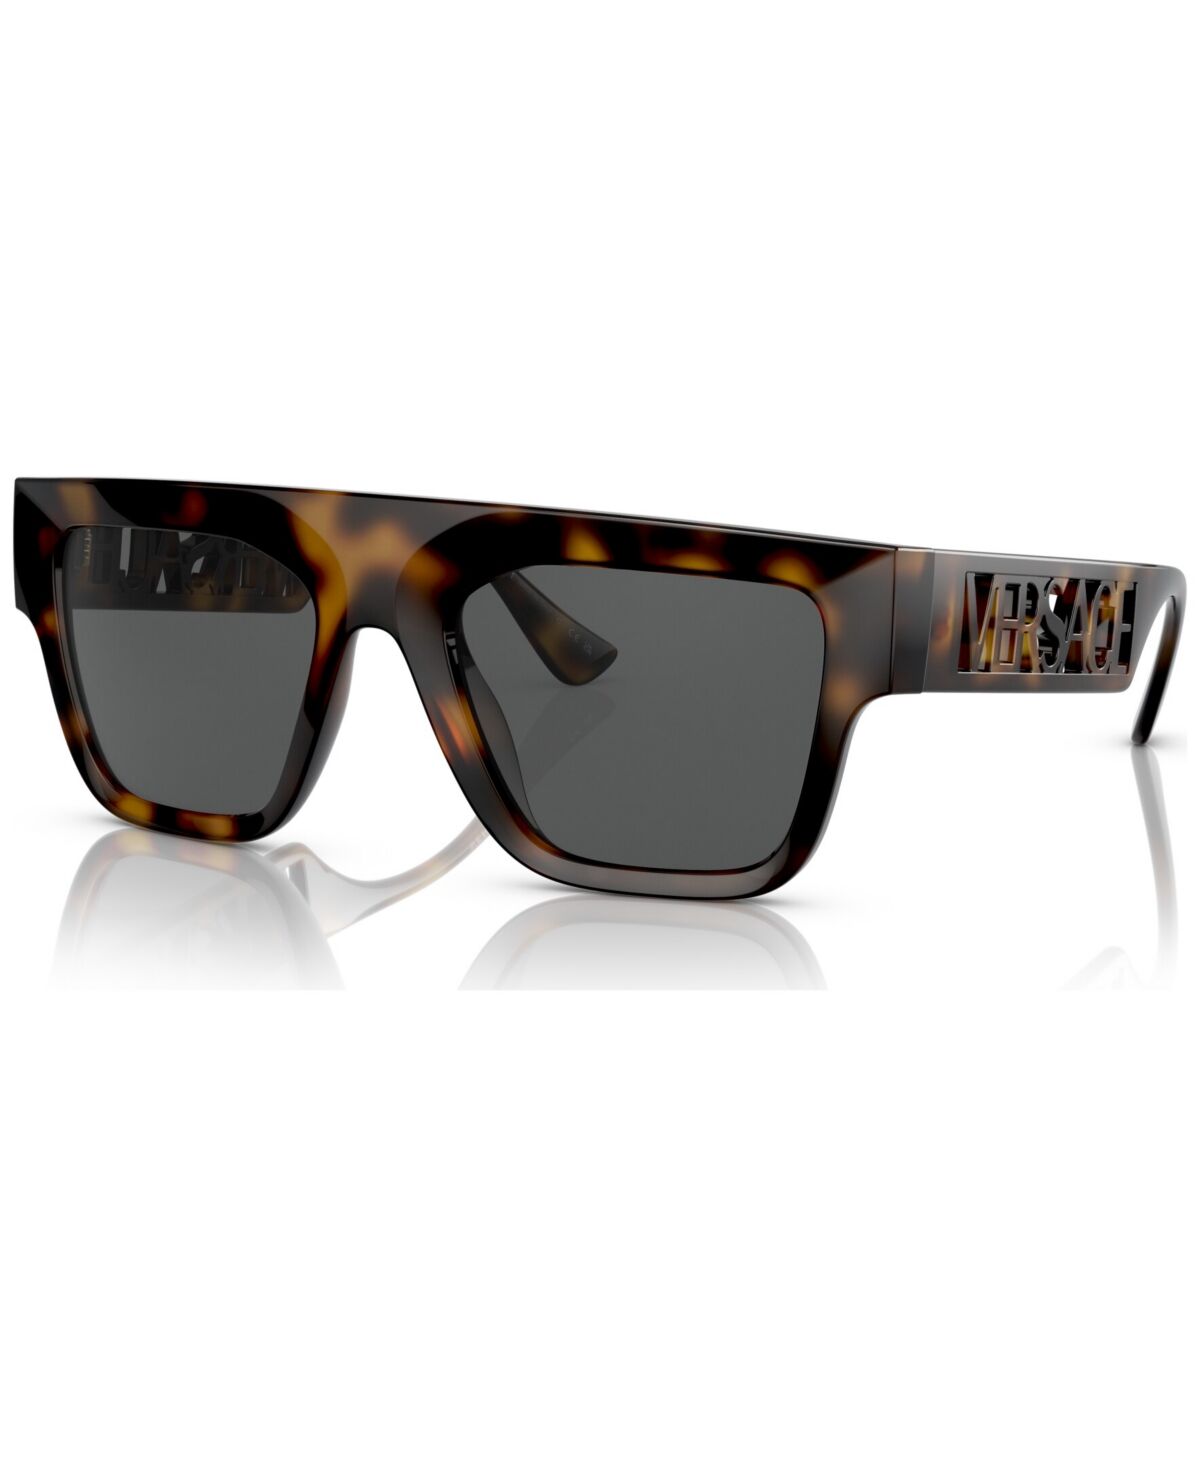 Versace Men's Sunglasses, VE4430U - Havana